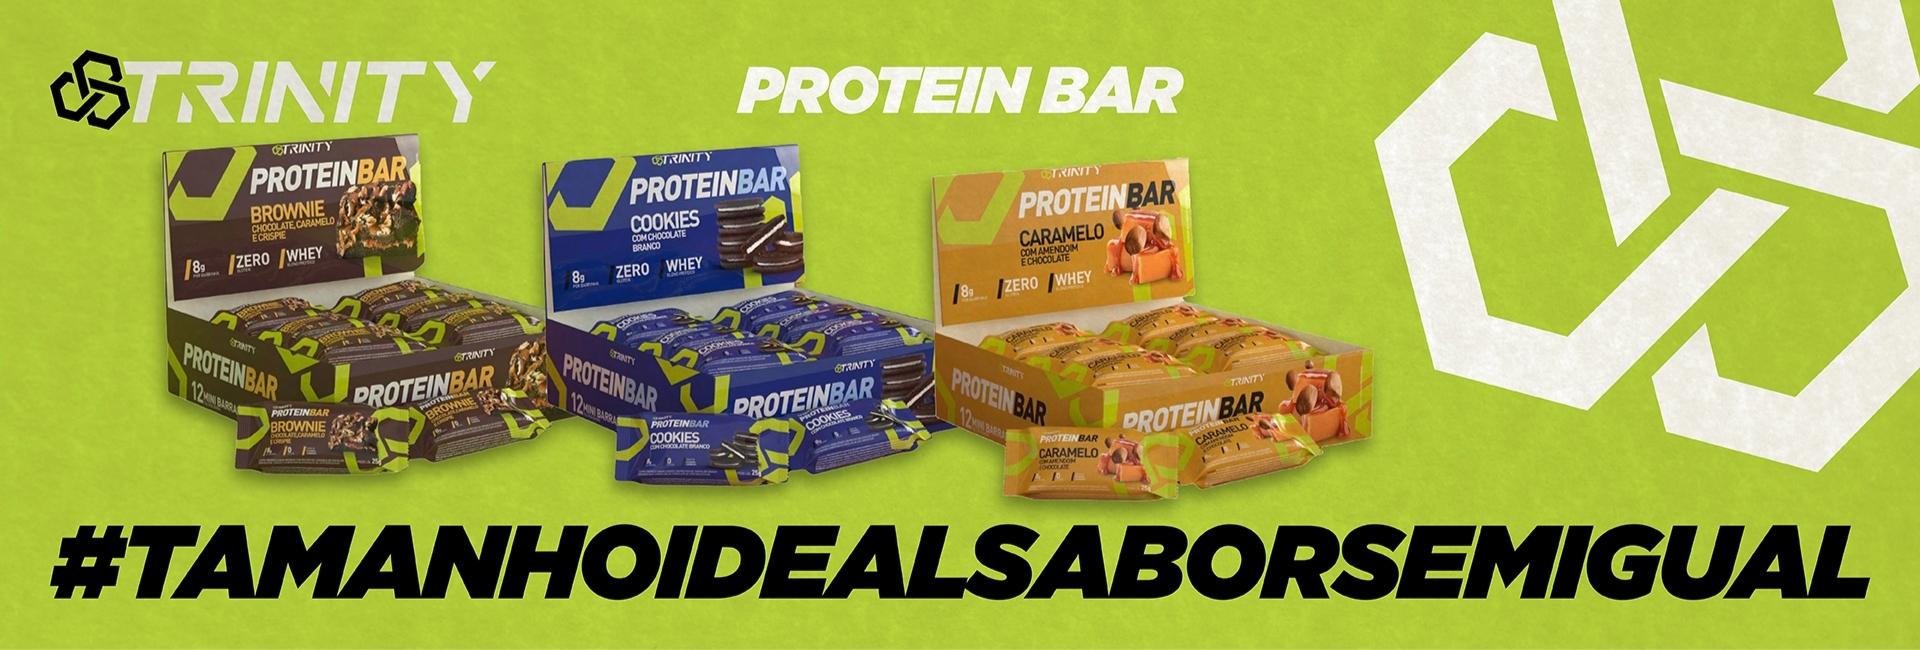 Protein Bar LP